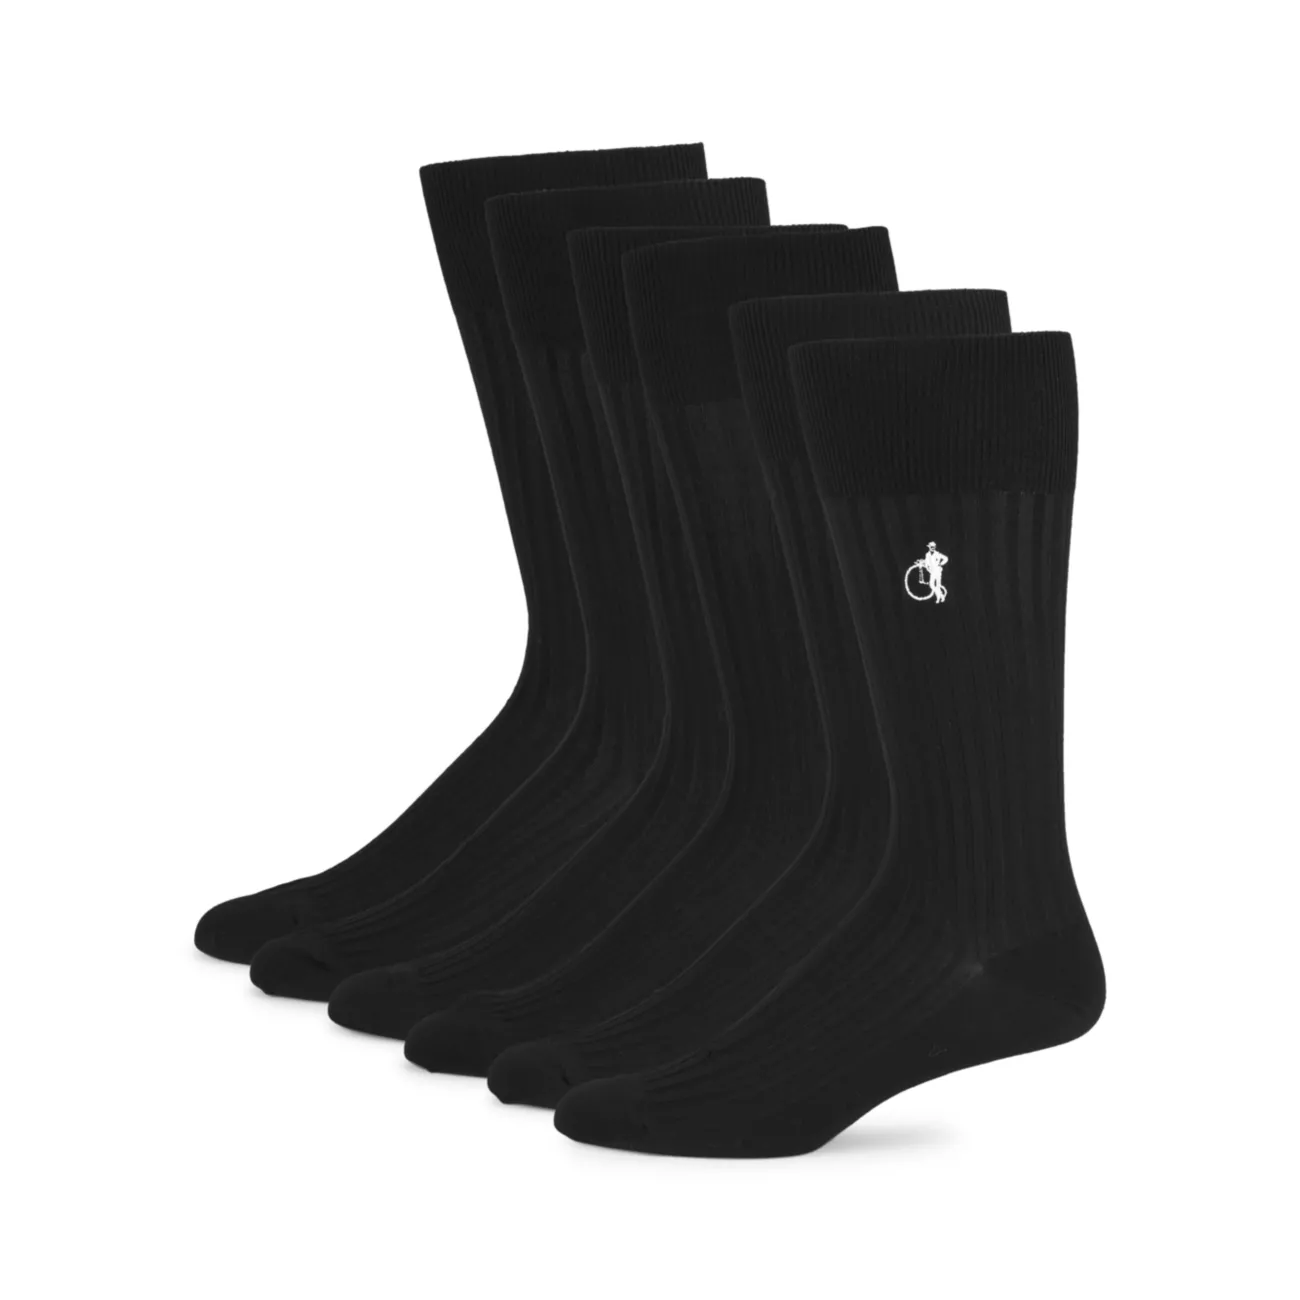 Подарочная коробка для носков простой вязки из 6 предметов Simply Sartorial London Sock Company